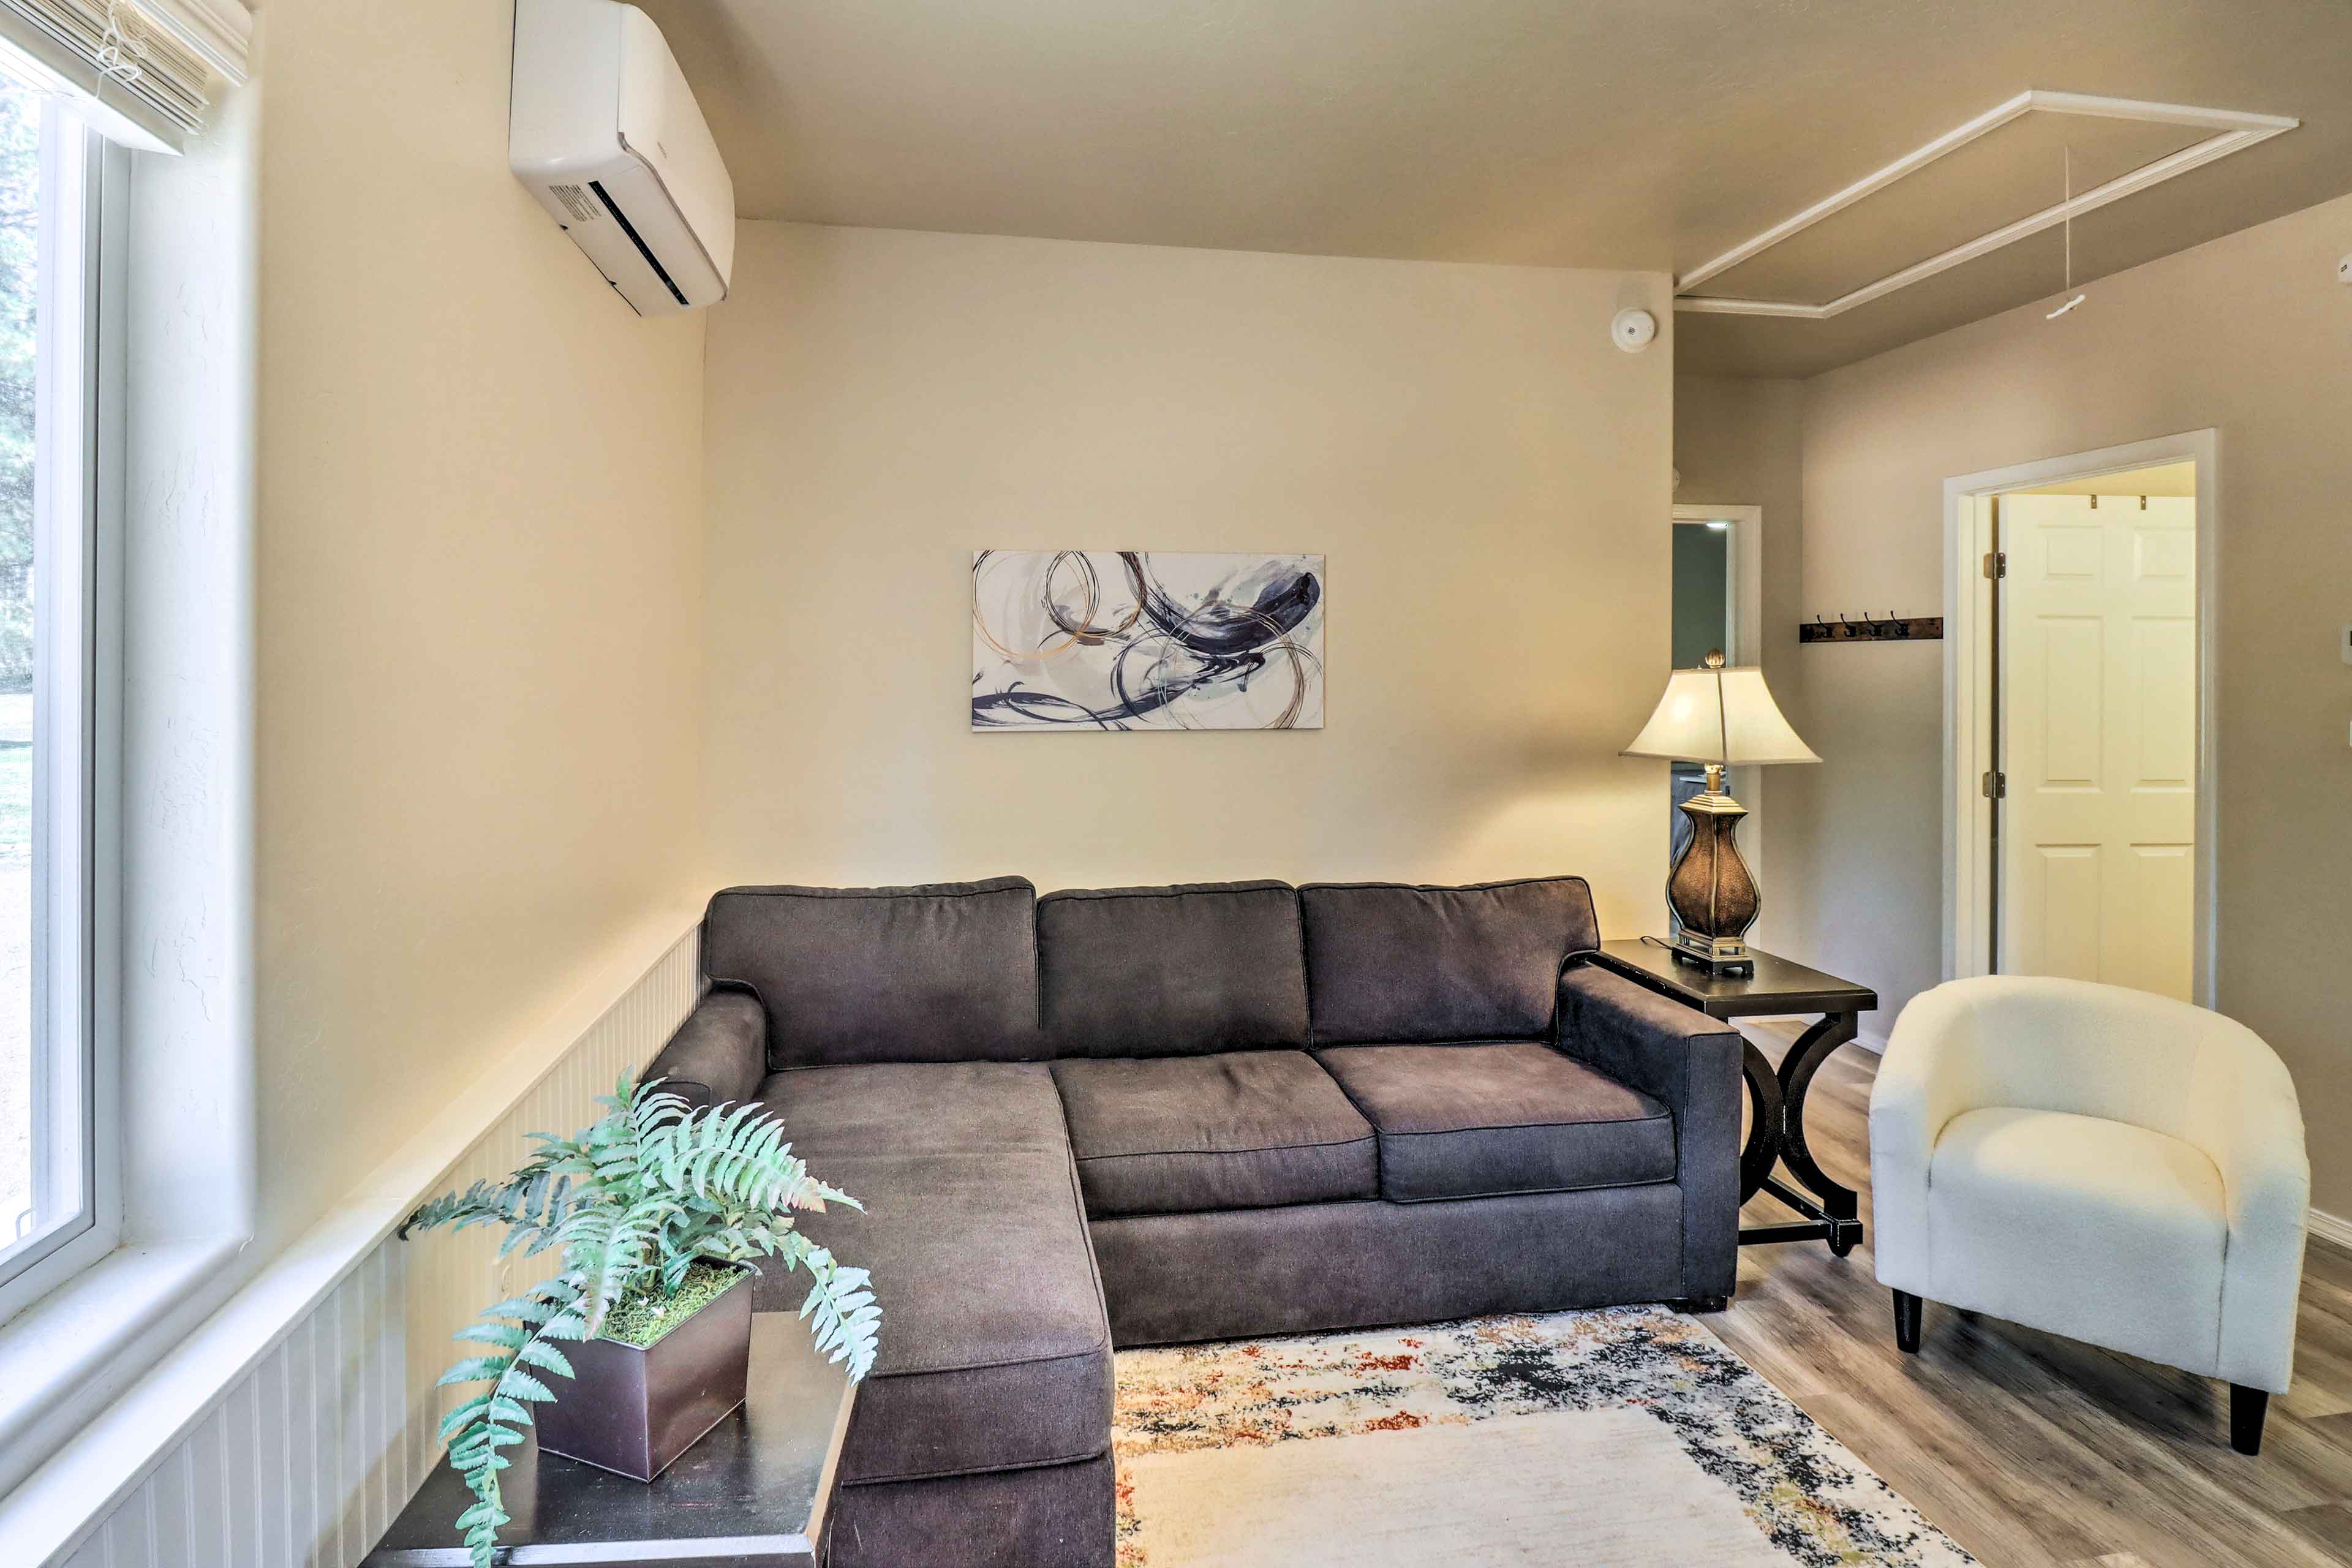 Living Room | Queen Sleeper Sofa | Main Floor | Smart TV